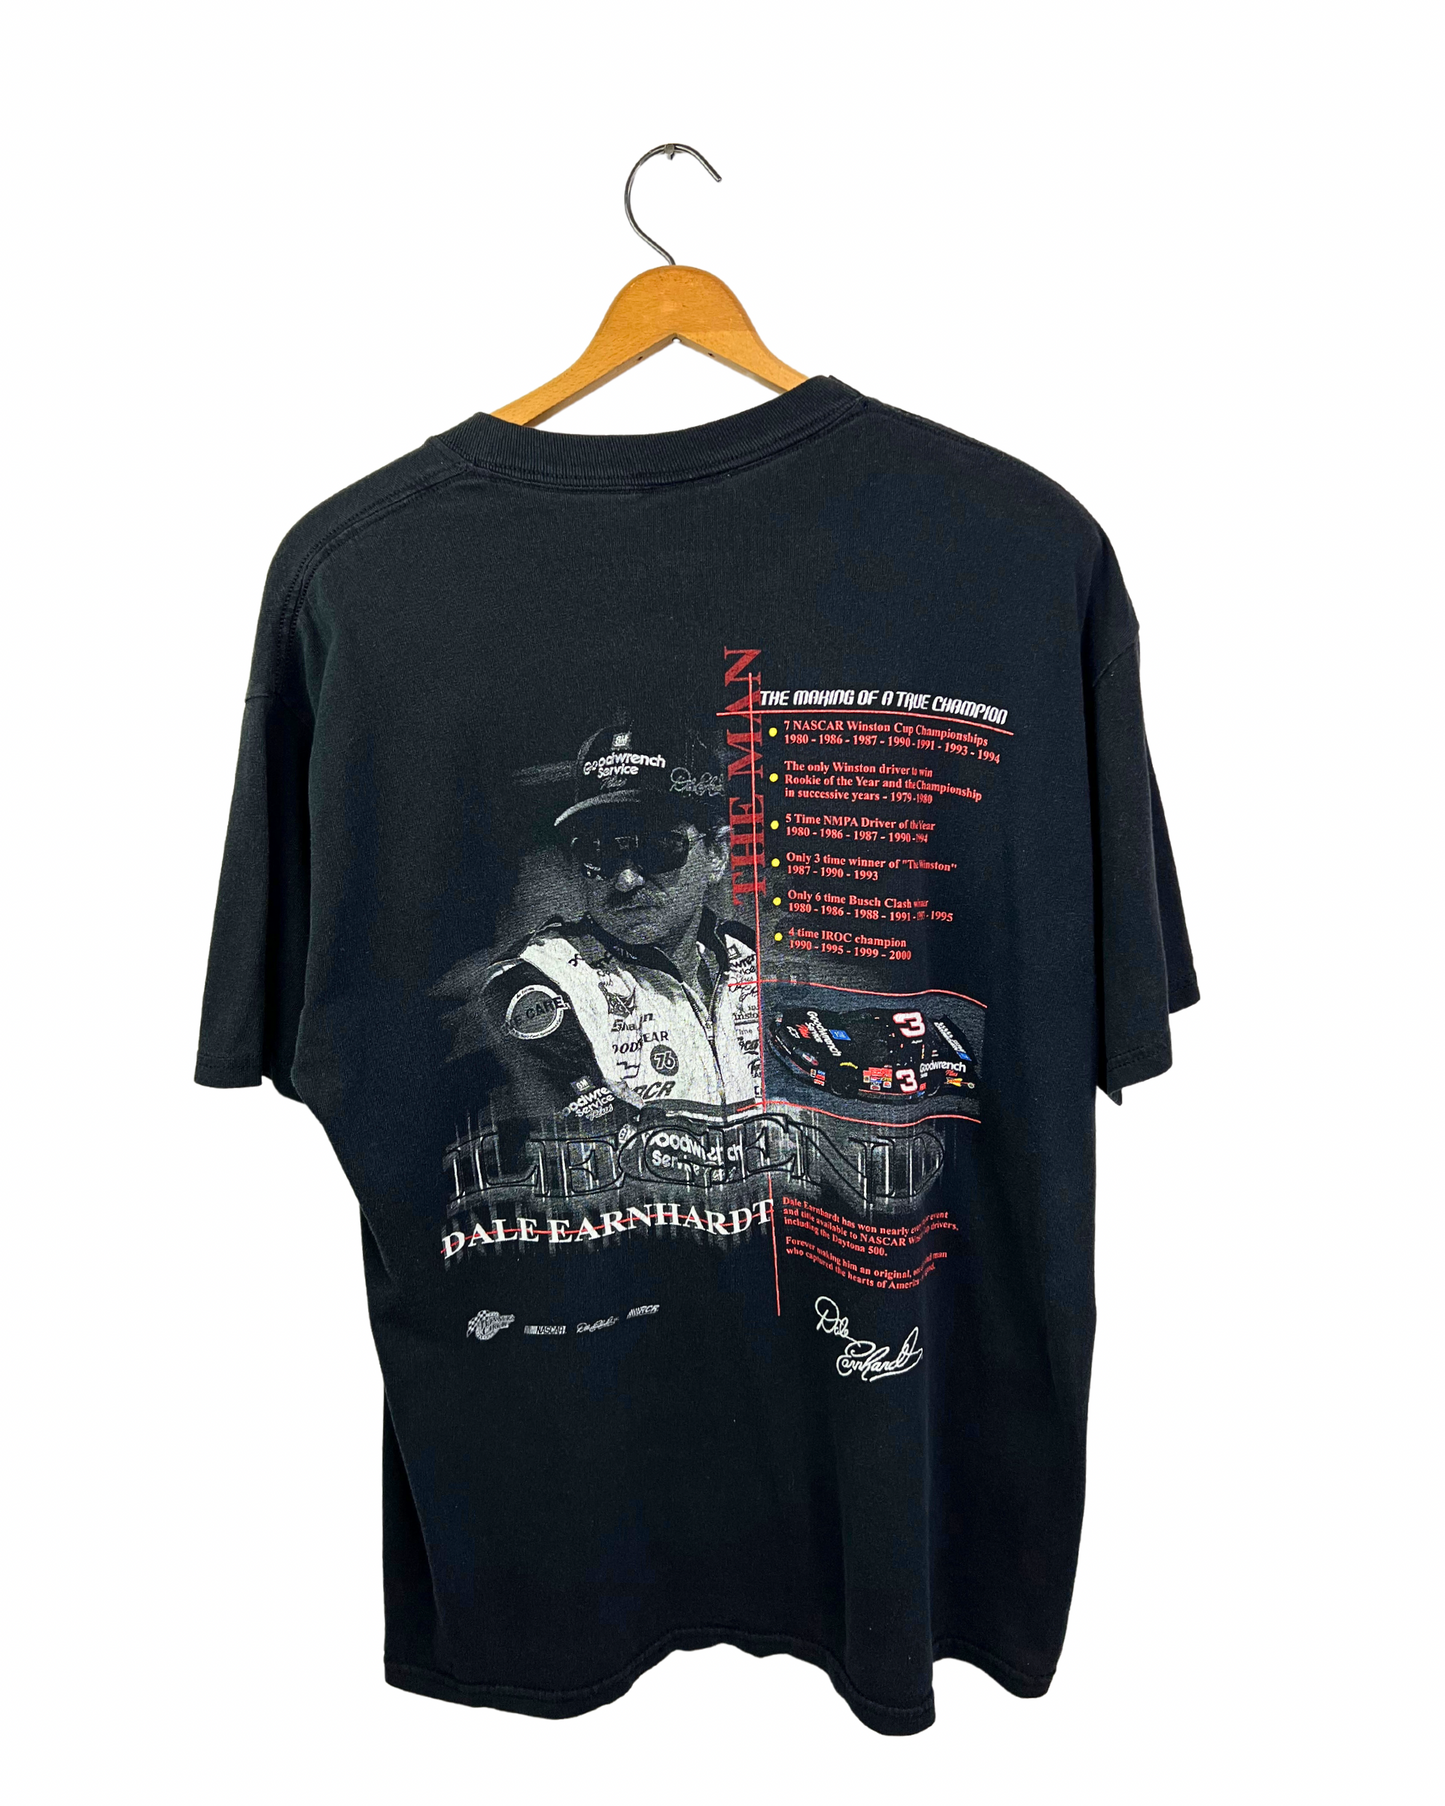 Vintage 2000 Dale Earnhardt #3 NASCAR Legend Career Making of a True Champion T-Shirt Size L